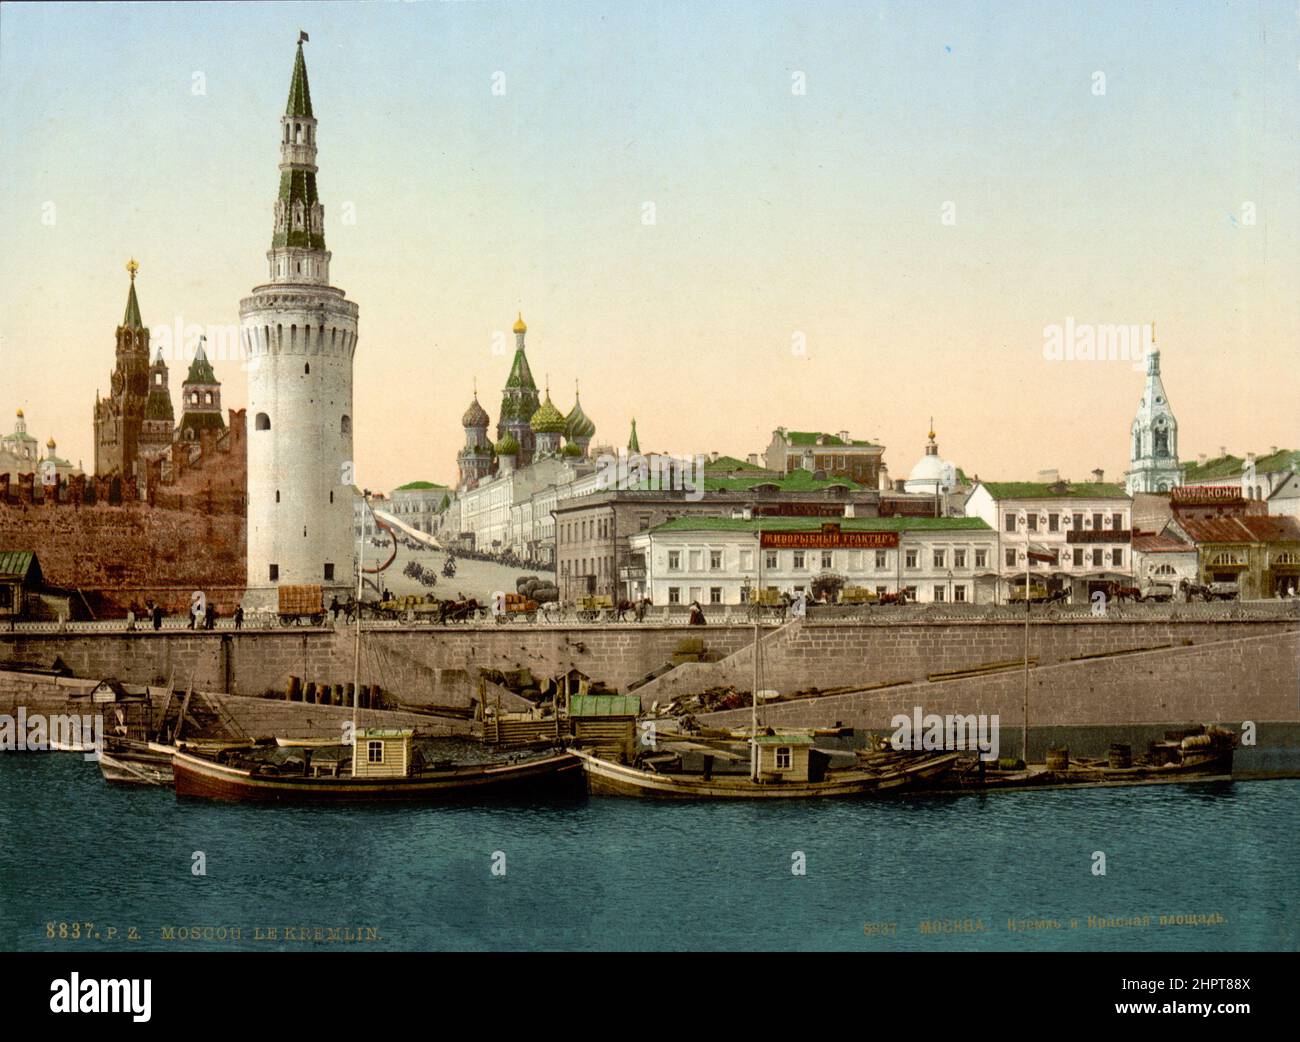 Foto aus dem 19th. Jahrhundert des Moskauer Kremls mit dem Spasskaya-Turm (Hintergrund), dem Vodovzvodnaya-Turm im Vordergrund und der Basilius-Kathedrale. Russisches Reich. Stockfoto